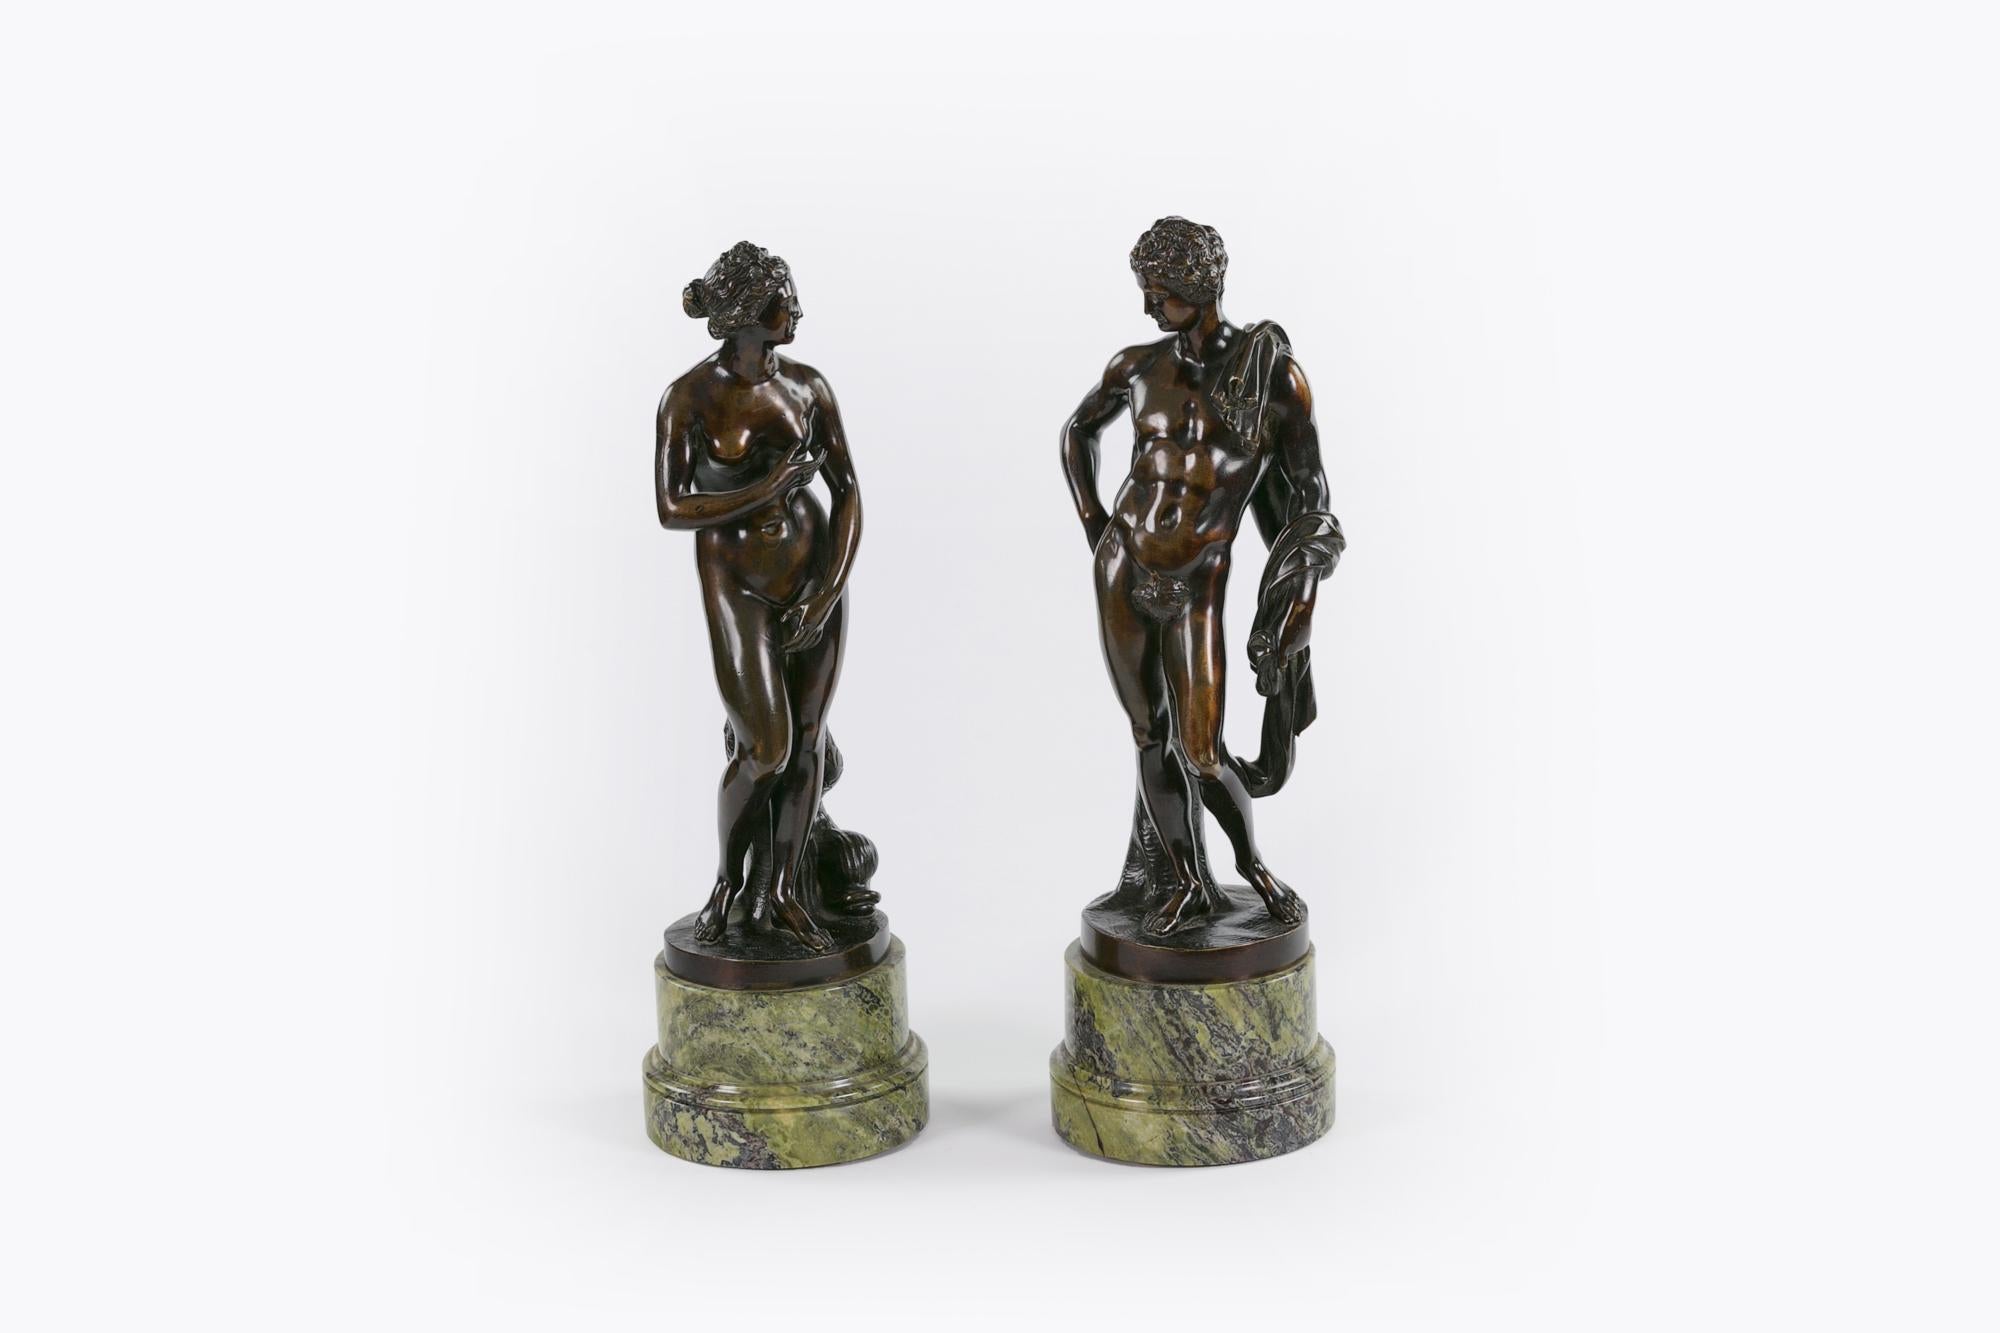 Irish 19th Century Neoclassical Pair of Bronzes Depicting Capitoline Venus and Apollo